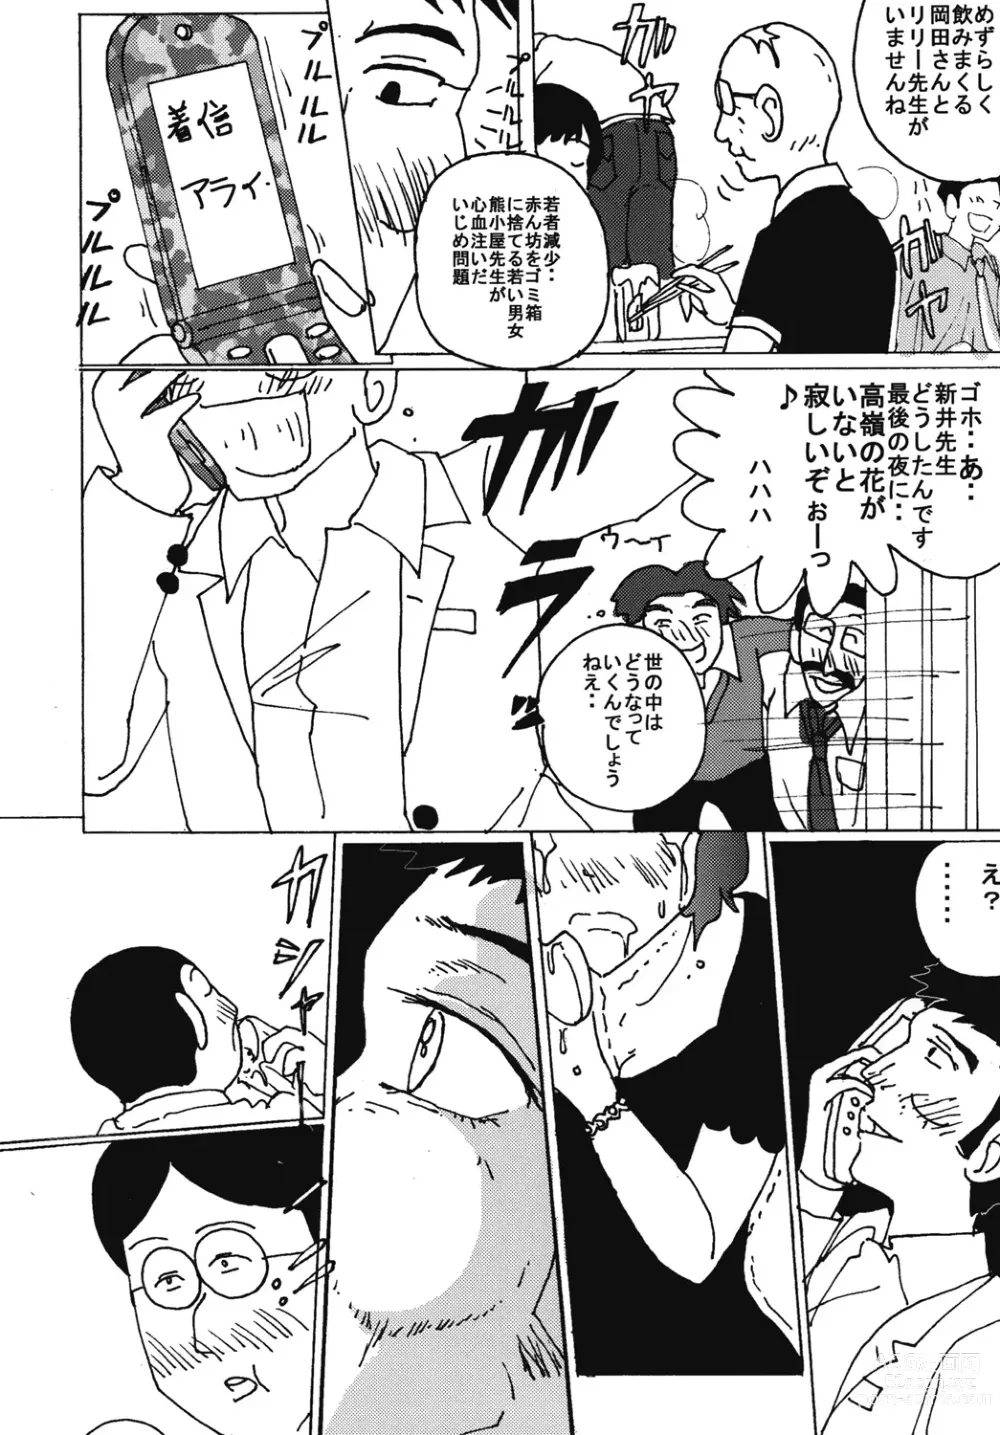 Page 3 of doujinshi Mune Ippai no Dizzy